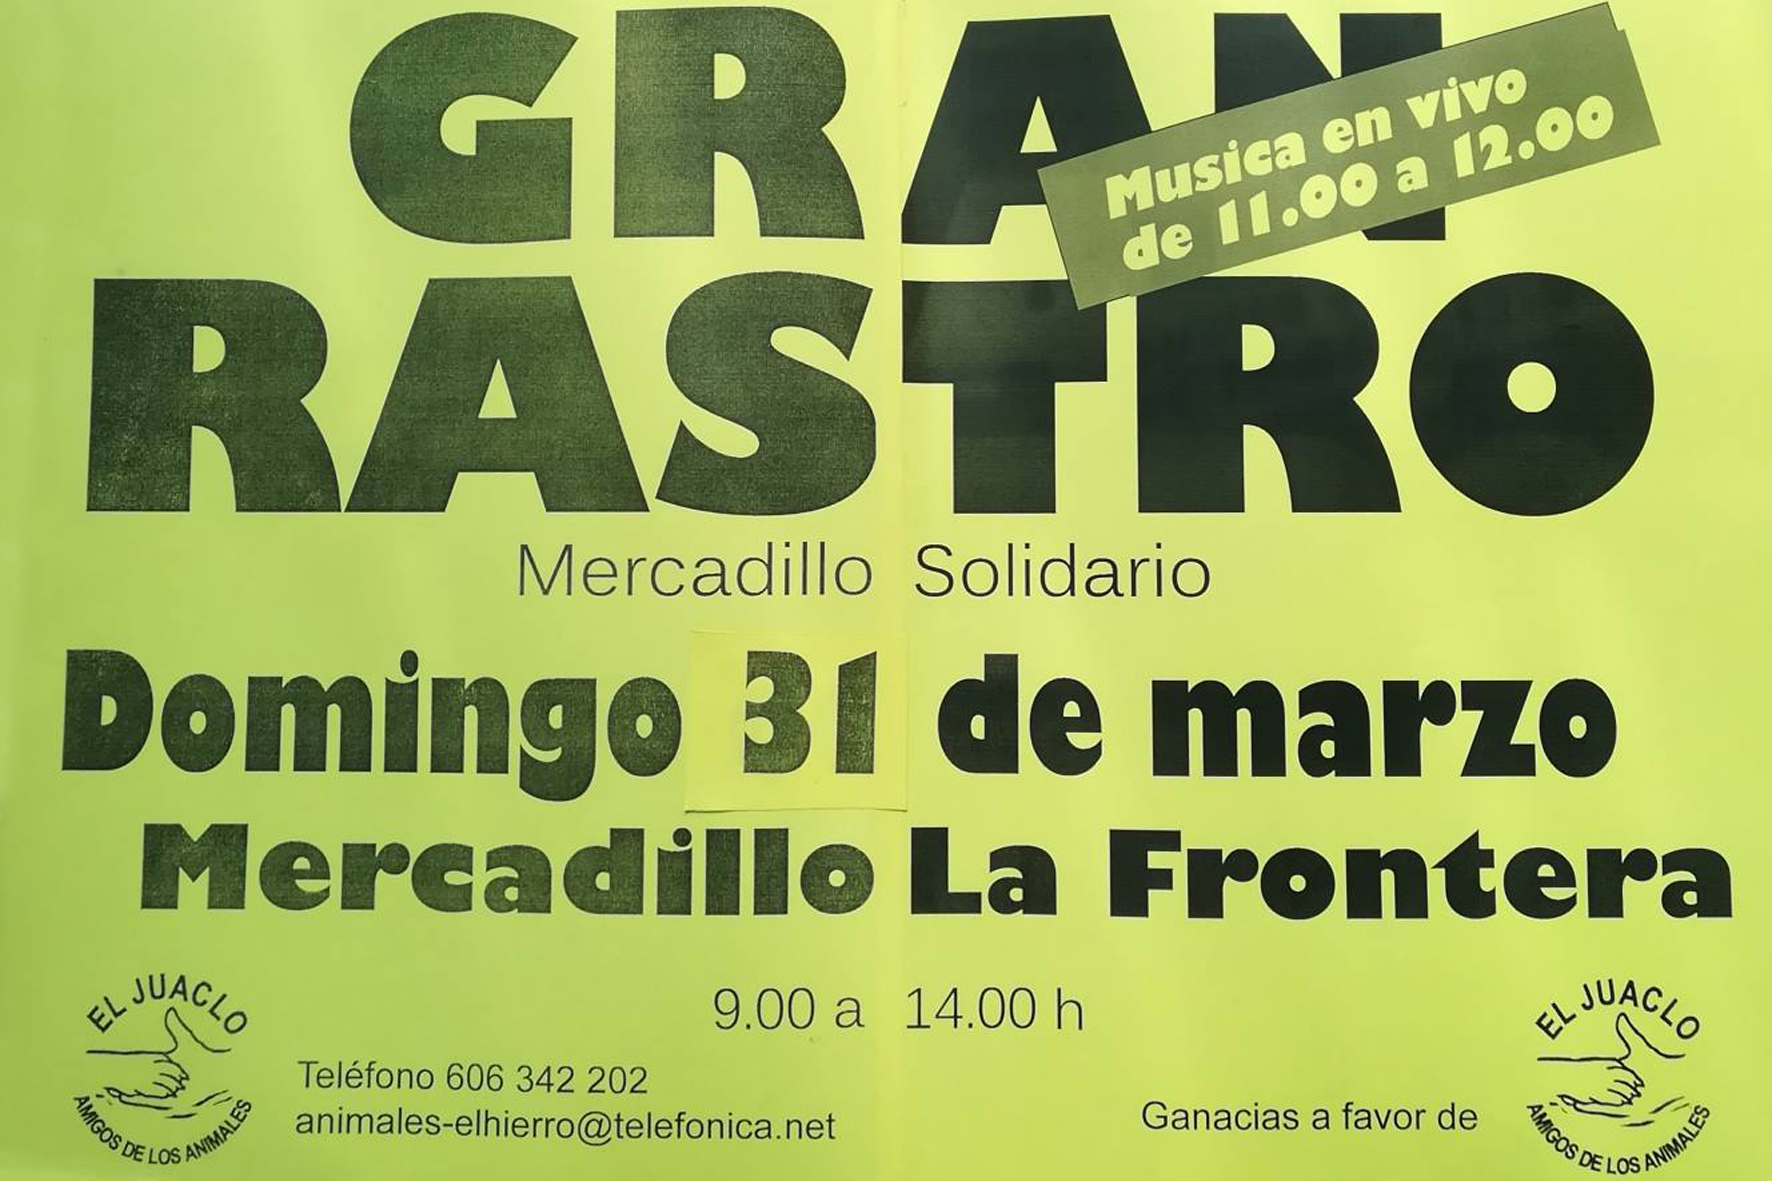 "El Juaclo" organiza un Rastro solidario en La Frontera